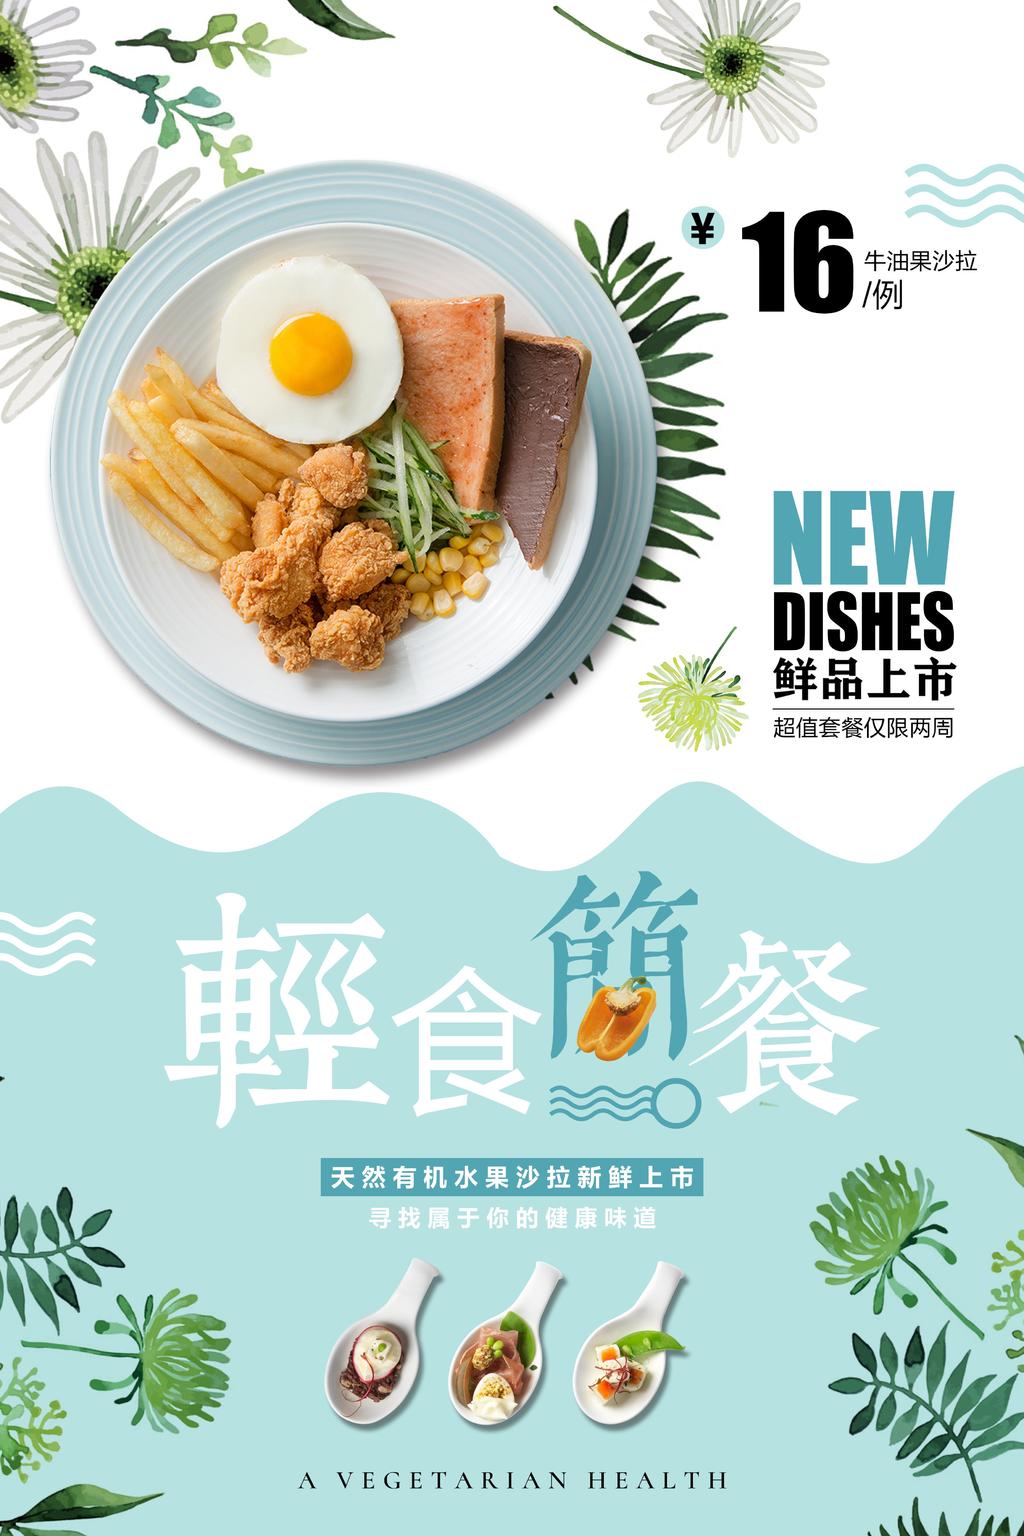 餐厅菜系新品宣传海报